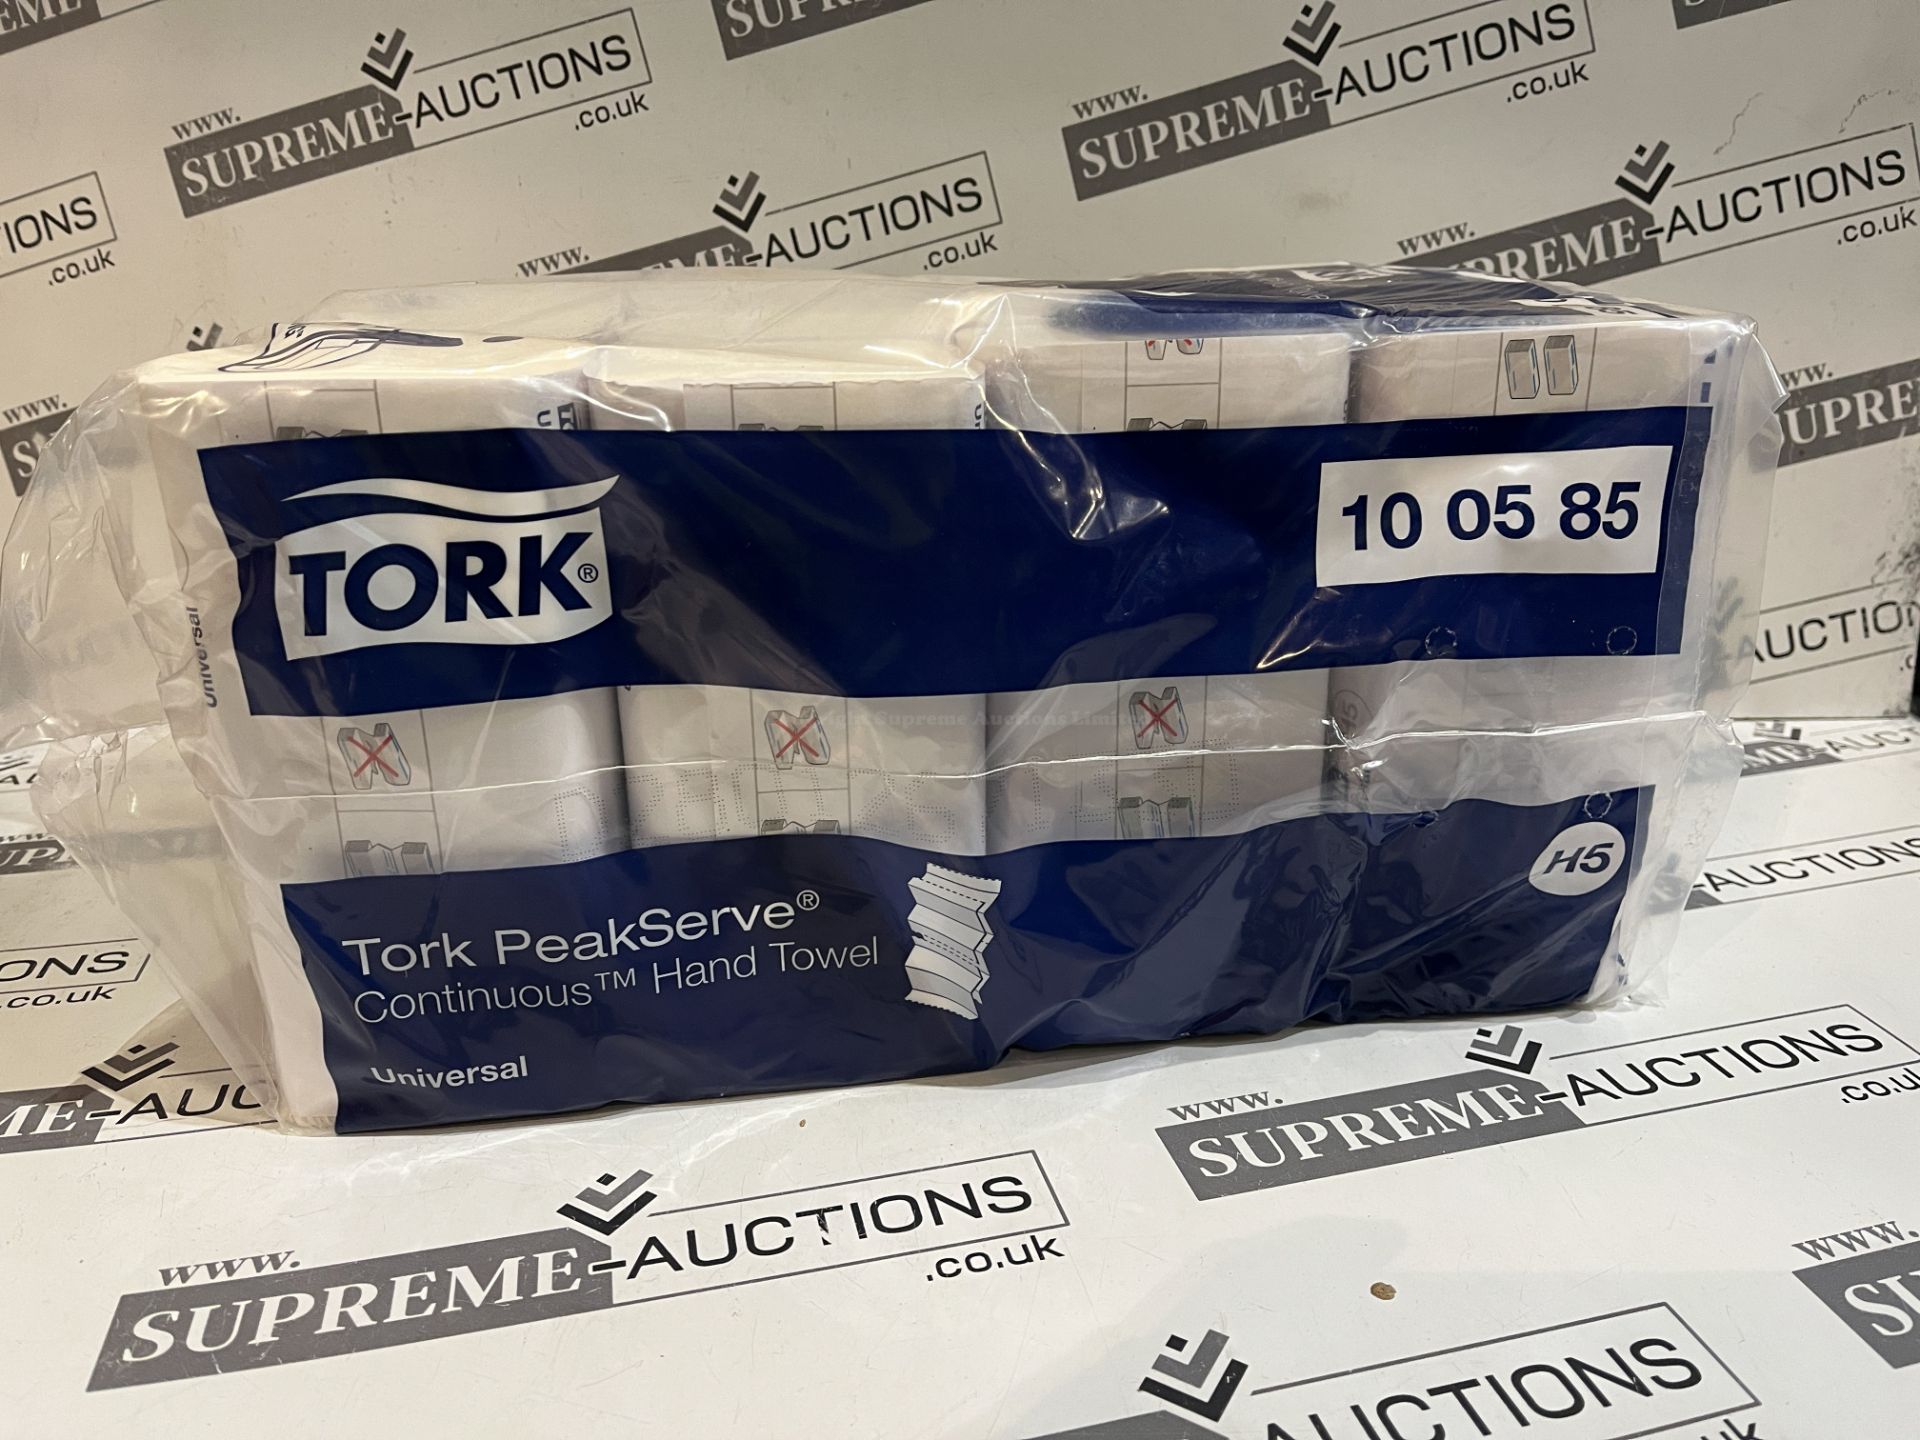 6 X BRAND NEW PACKS OF 12 TORK 410 SHEET TOILET ROLLS R9-1